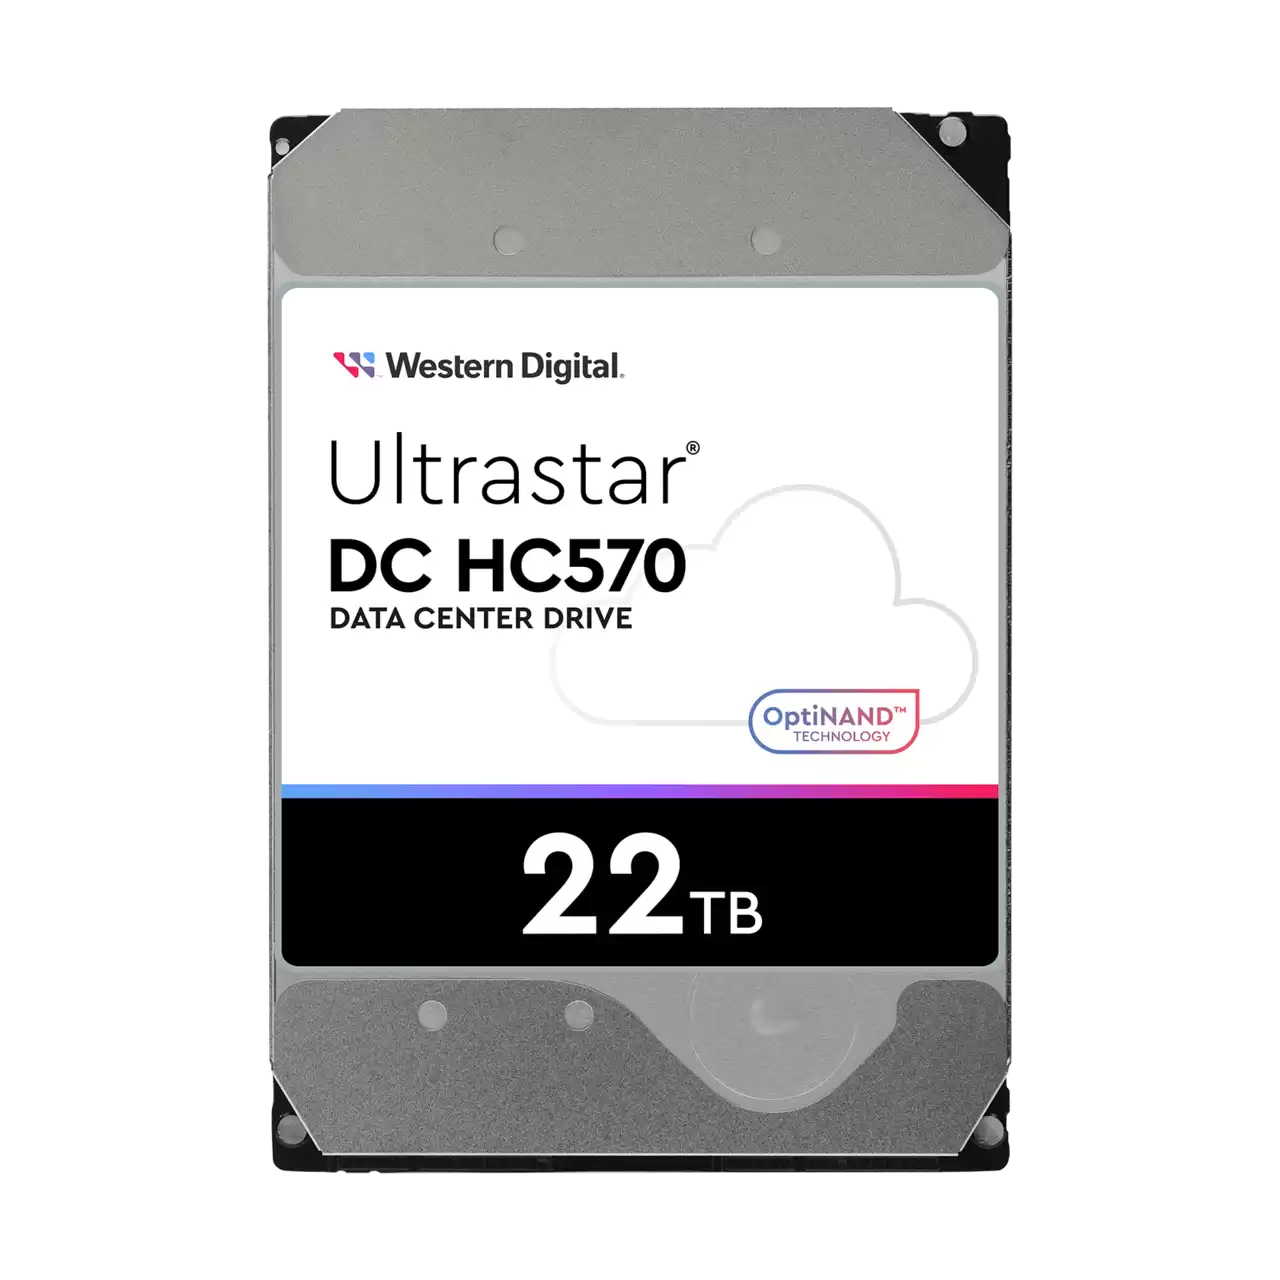 Western Digital Ultrastar DH HC570 3.5